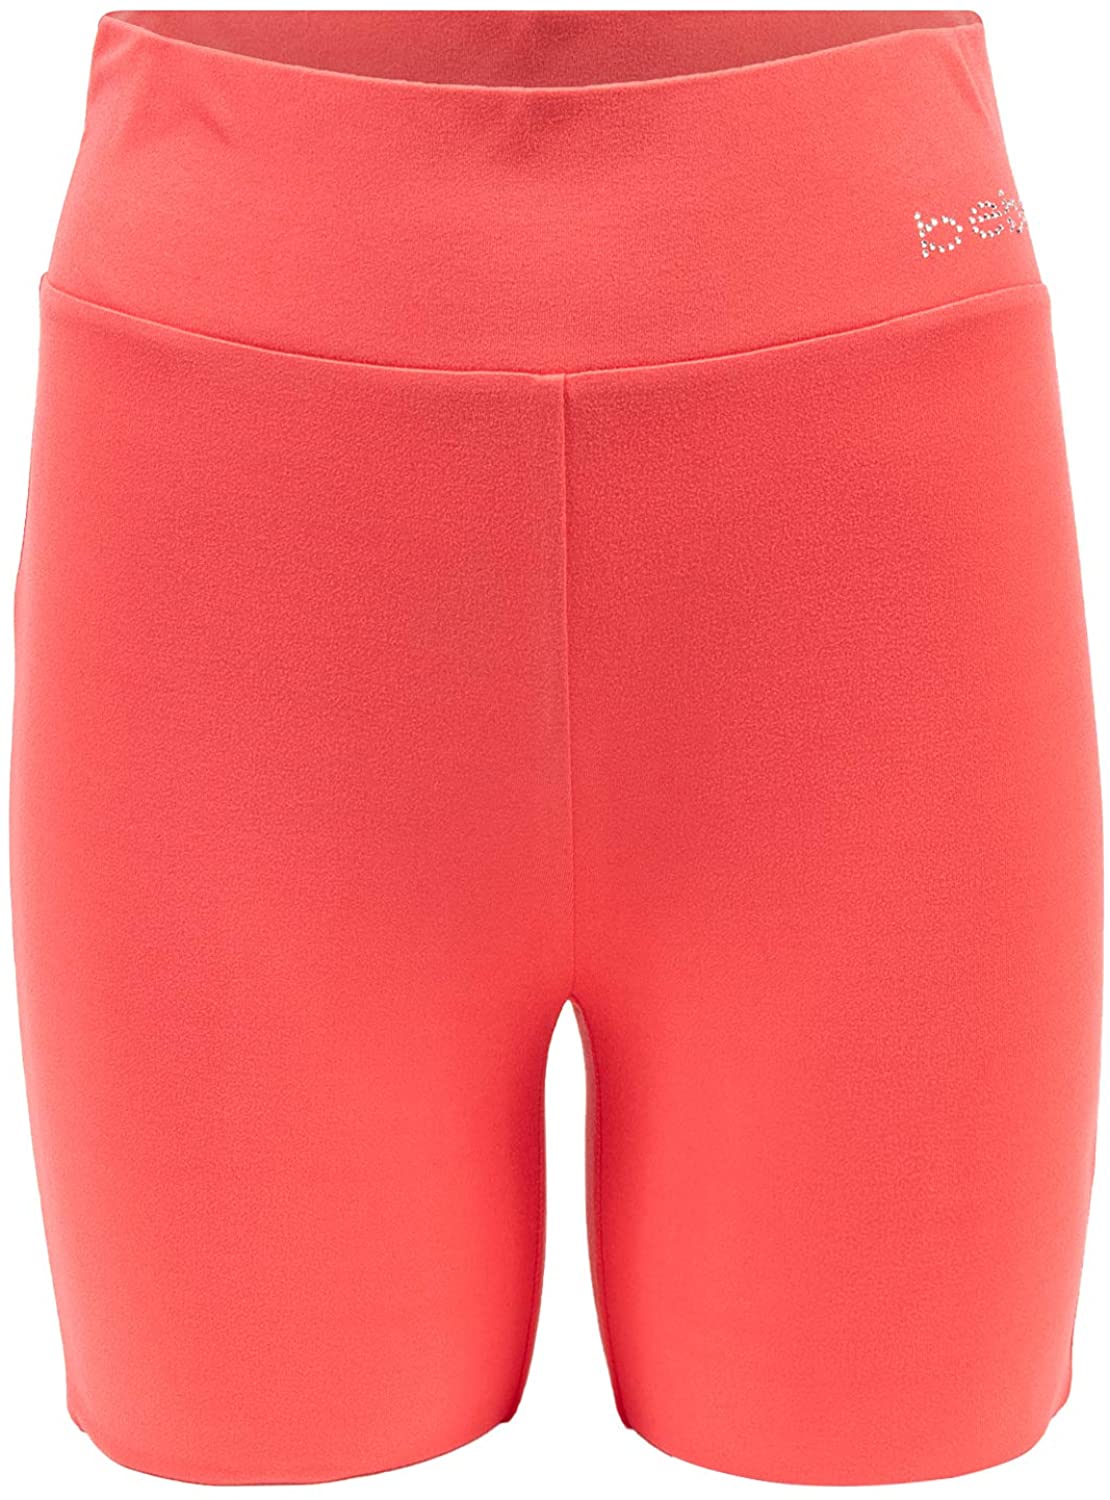 Workout Shorts for Women Biker Shorts Womens Shorts bebe Shorts for Women